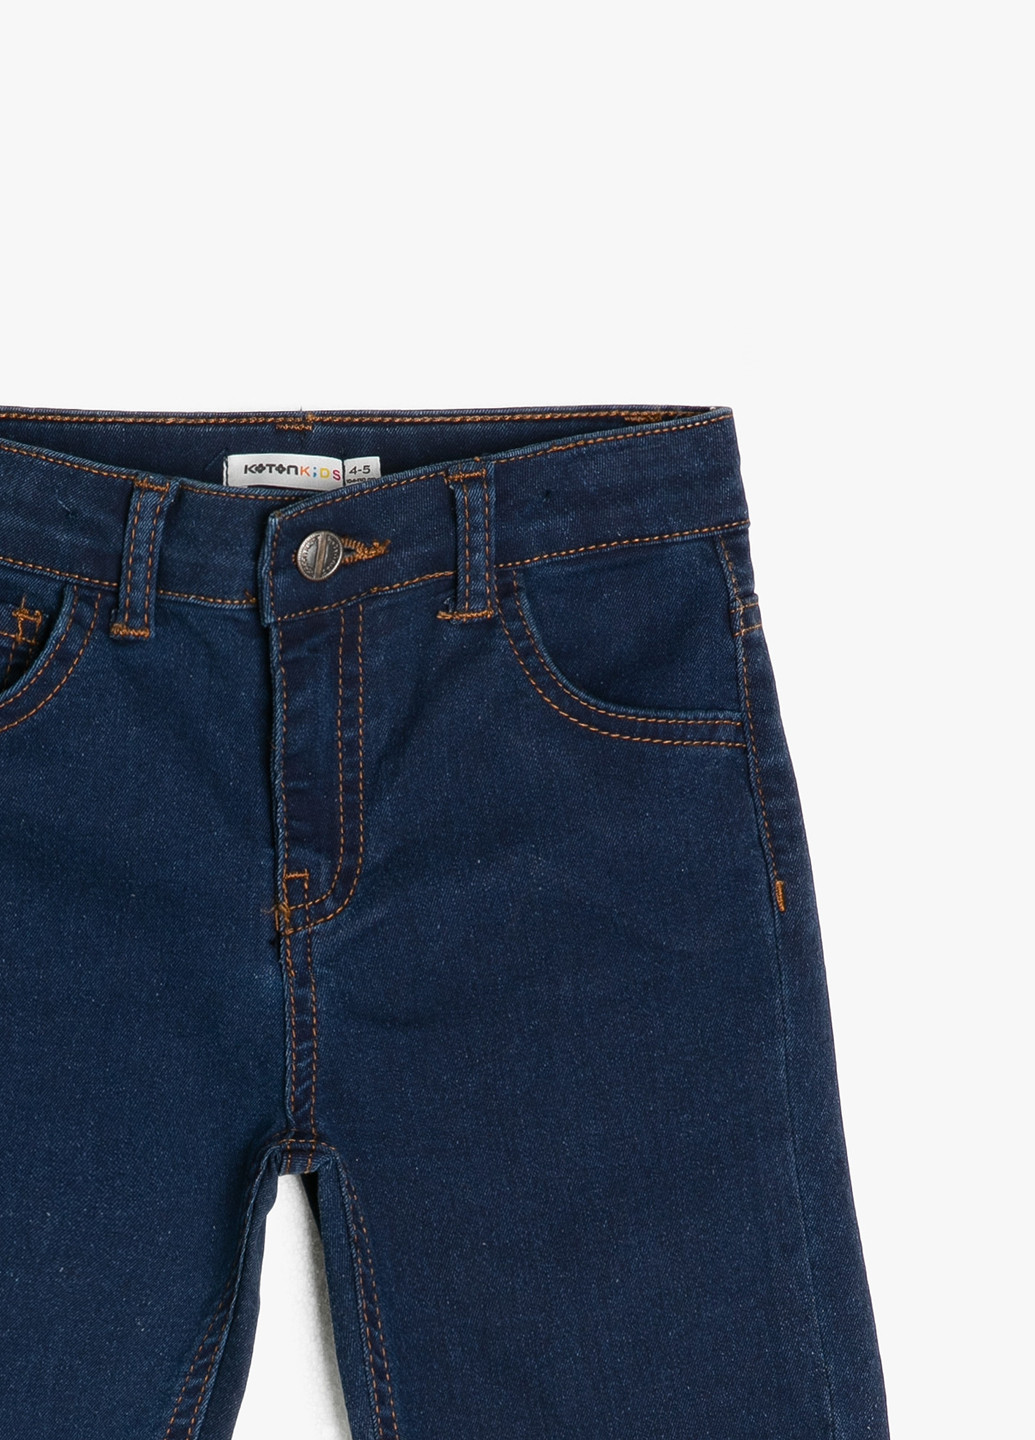 Шорты KOTON однотонные тёмно-синие джинсовые хлопок